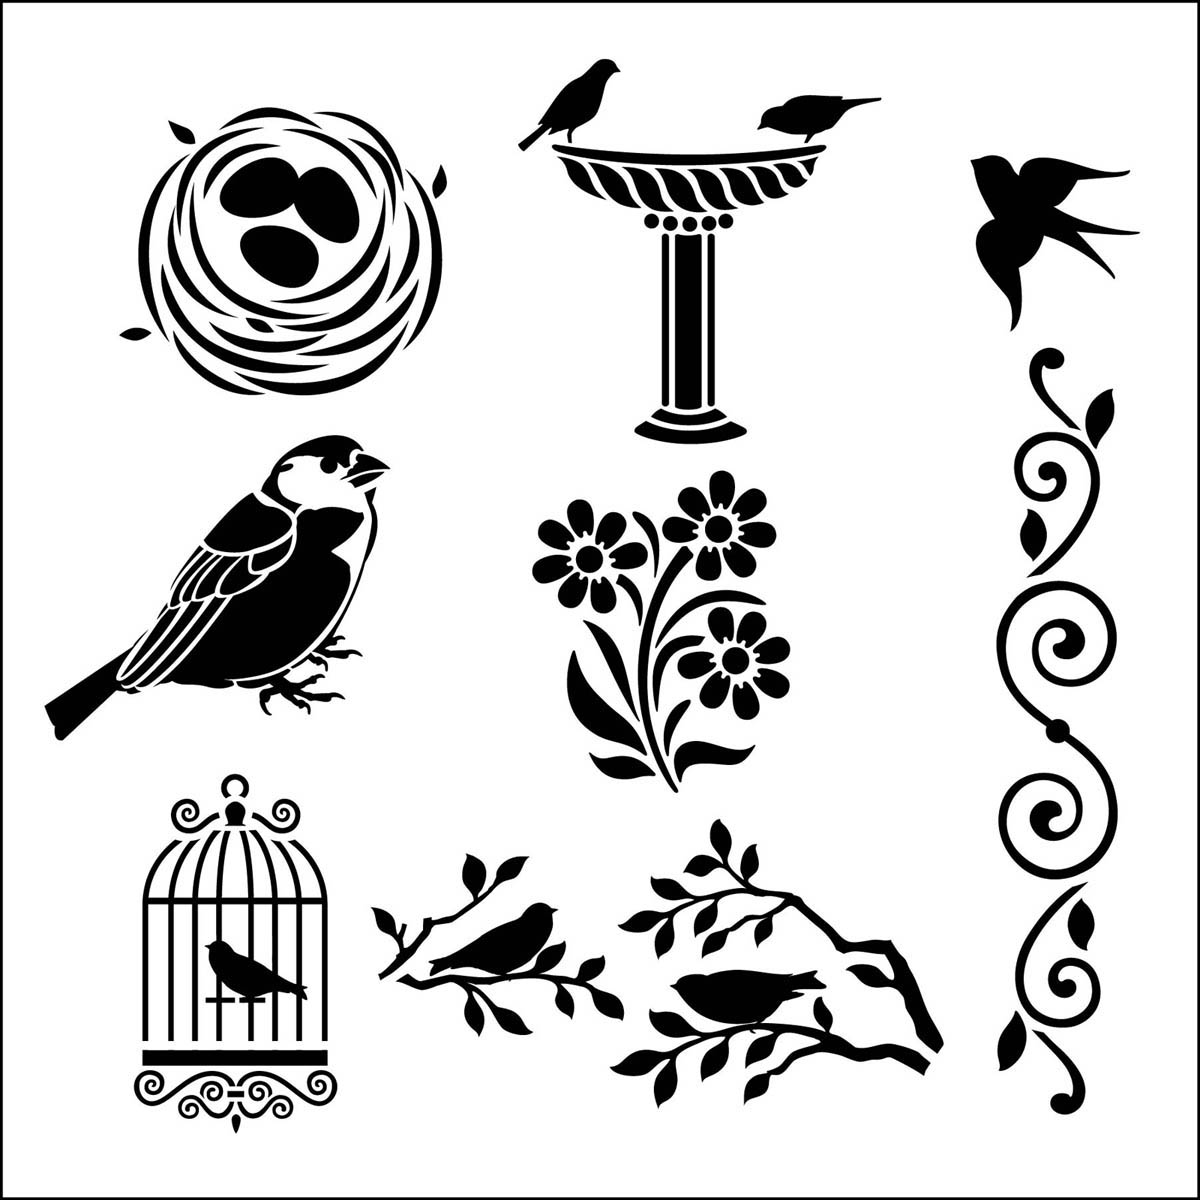 FolkArt ® Painting Stencils - Small - Birds - 31043